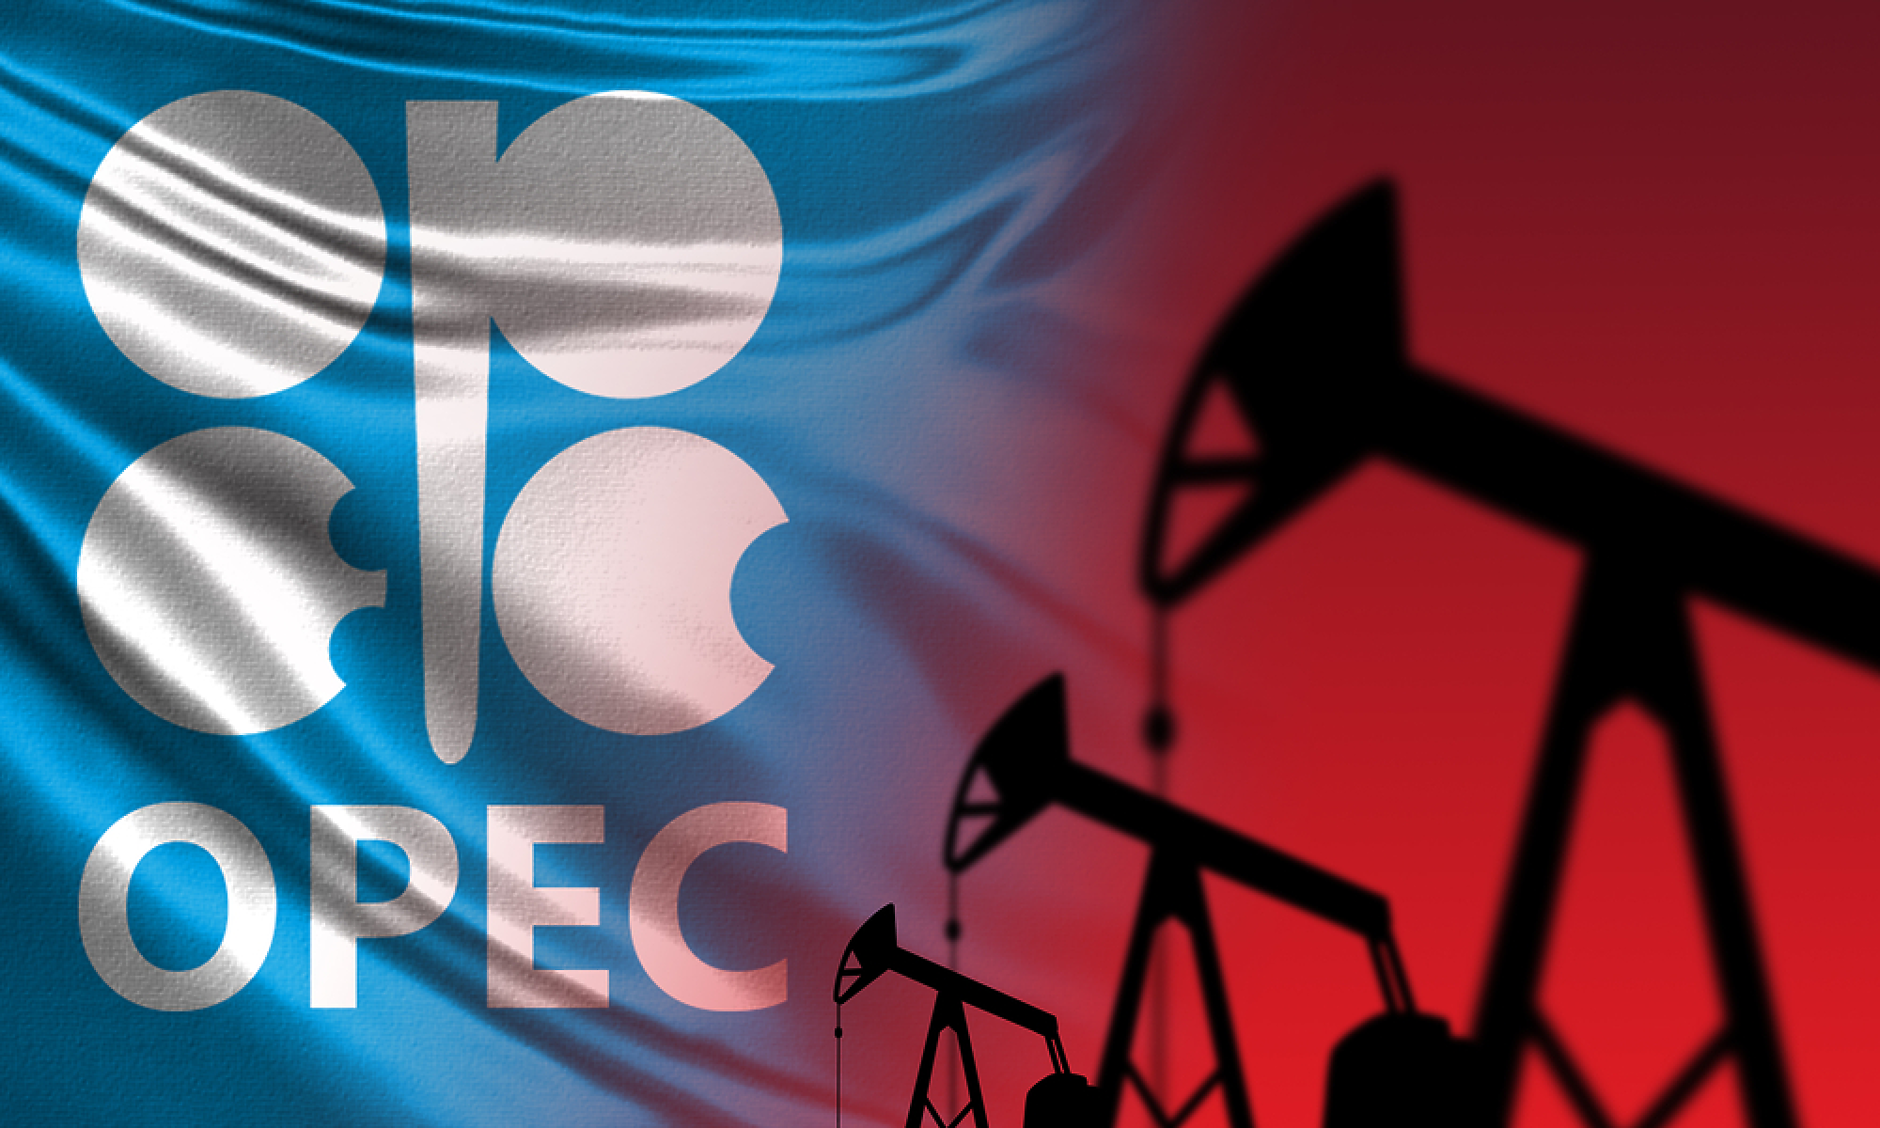 Петролът на ОПЕК се задържа на ниво от около 82 долара за барел